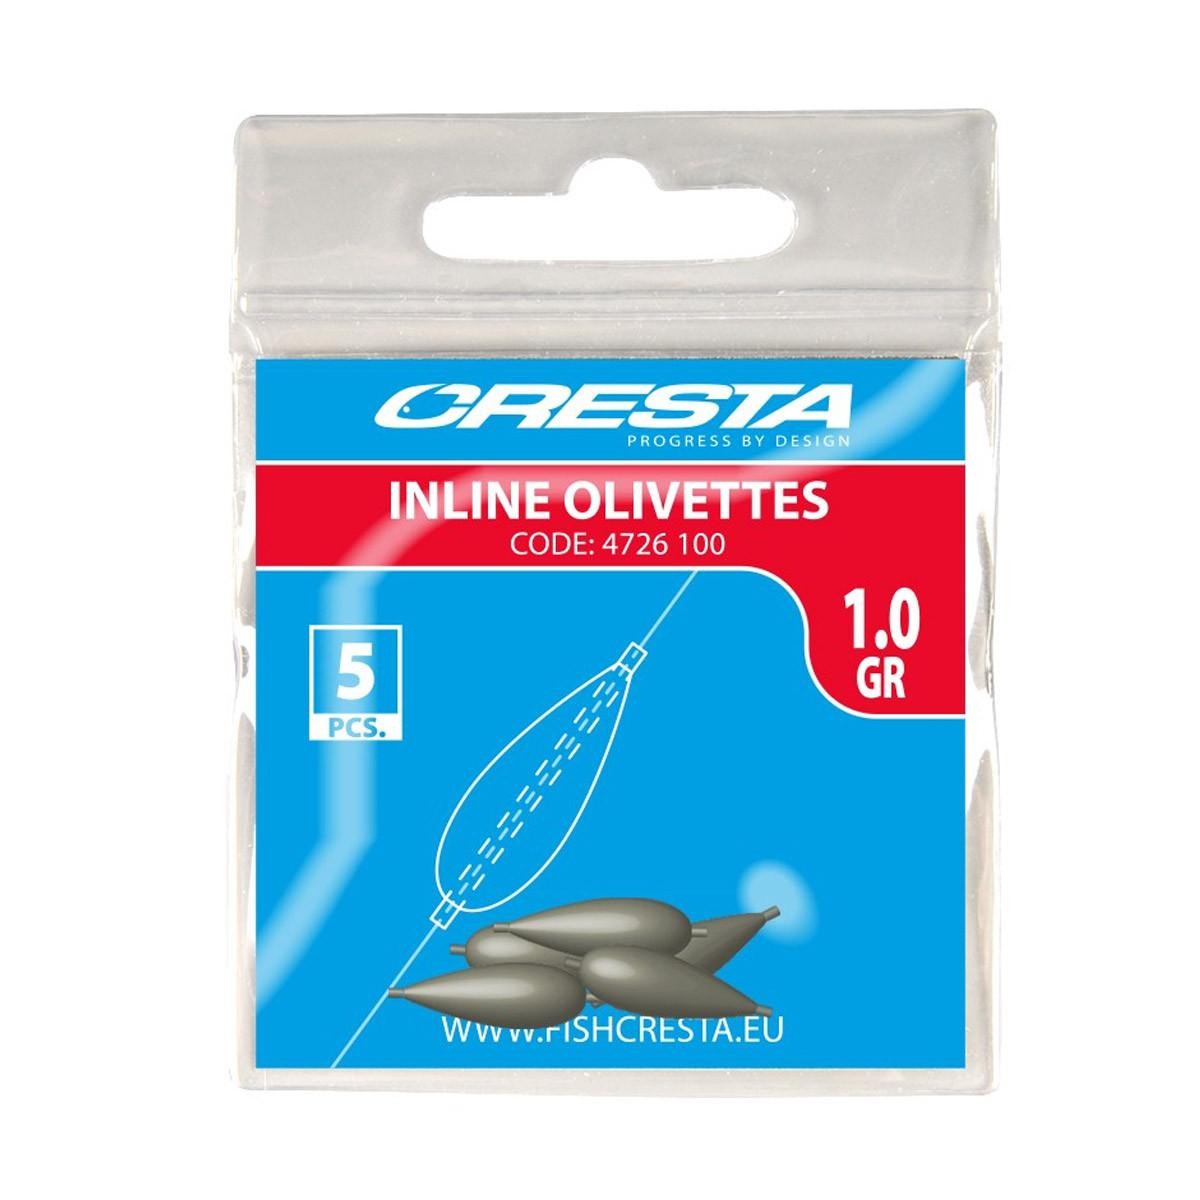 Cresta Inline Olivettes 1 gr 5st.